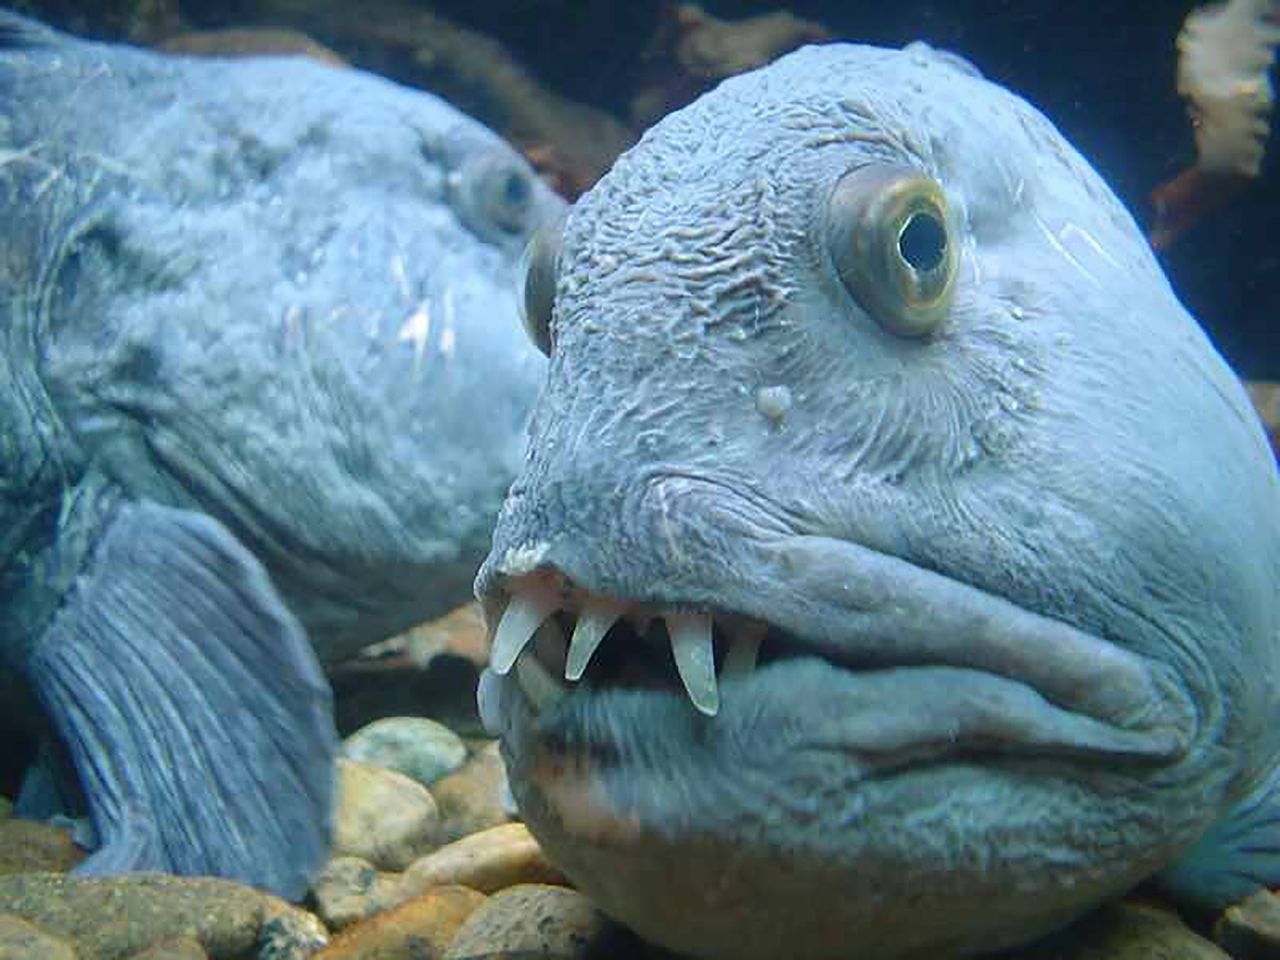 Zębacz pasisty to niezwykle dziwna ryba. Jest również nazywany "wilkiem morskim".